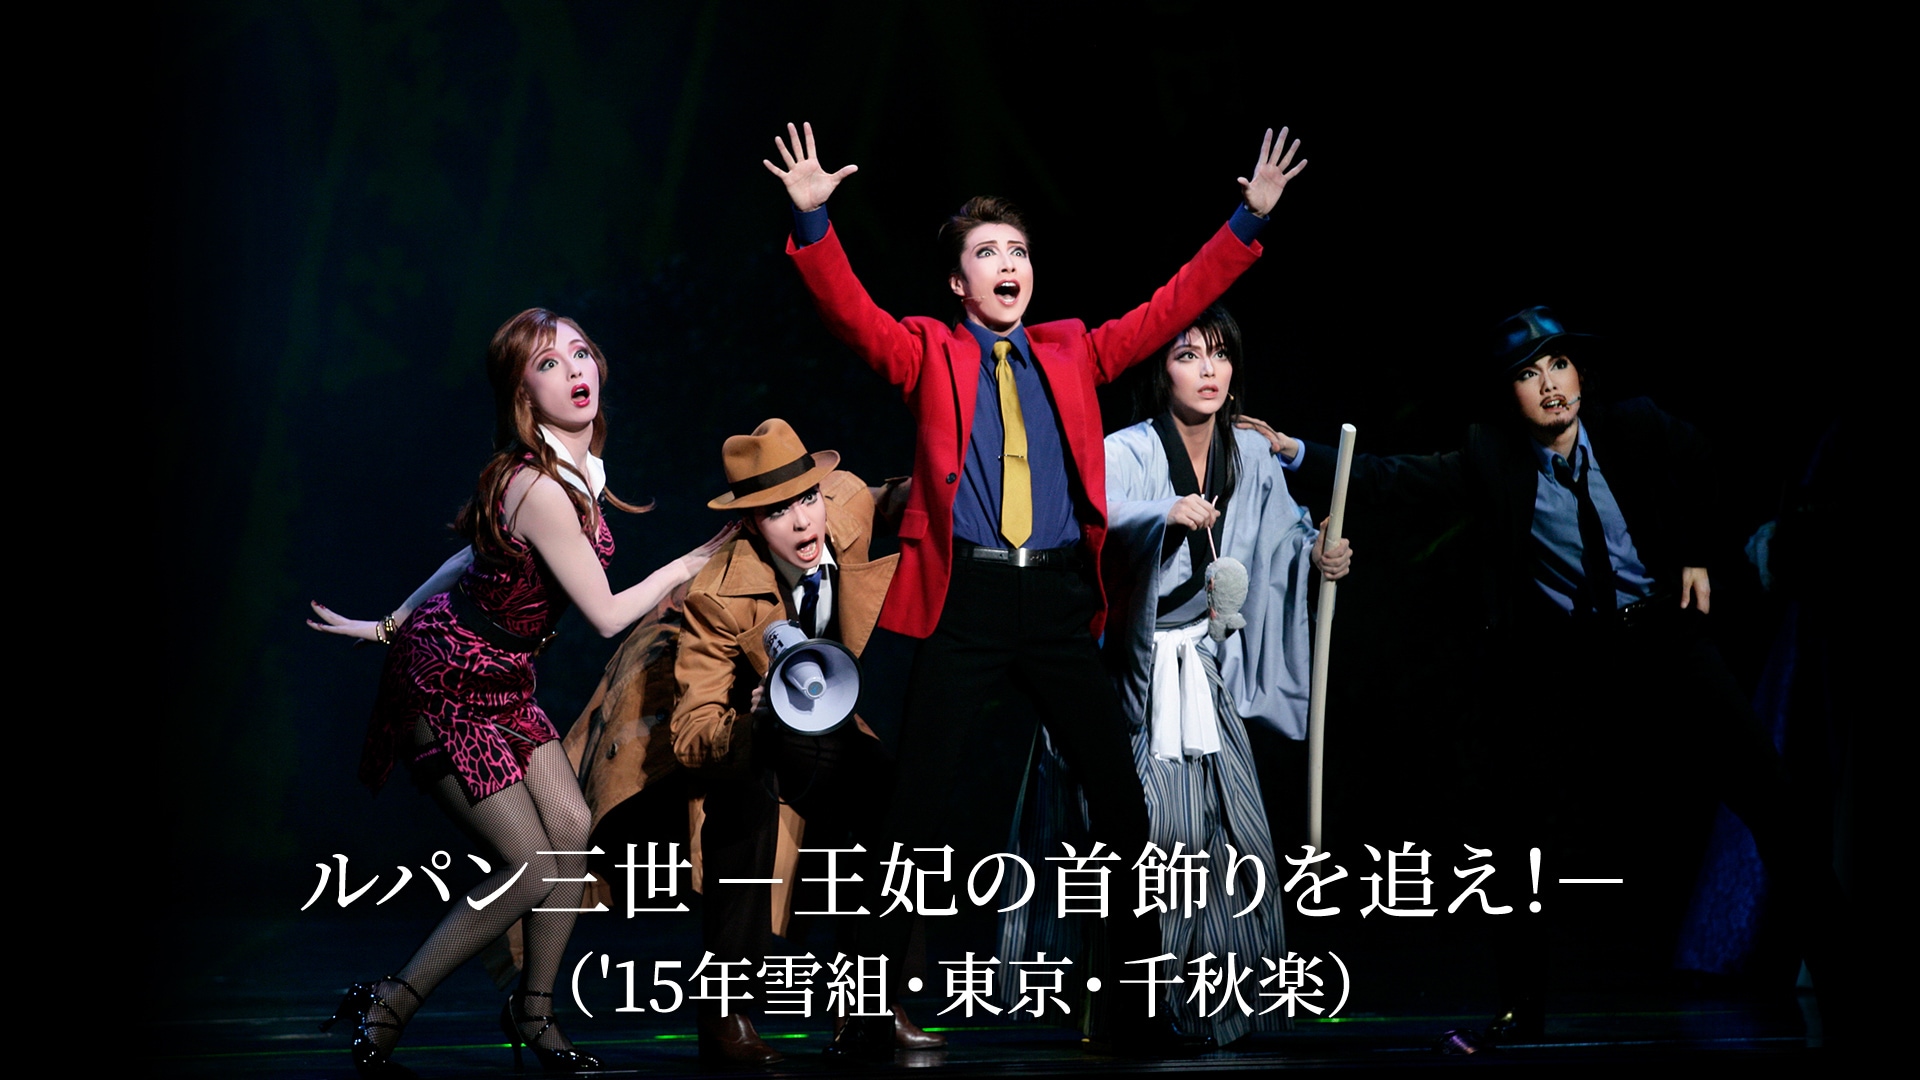 雪組 宝塚大劇場公演 ミュージカル ルパン三世-王妃の首飾りを追え 